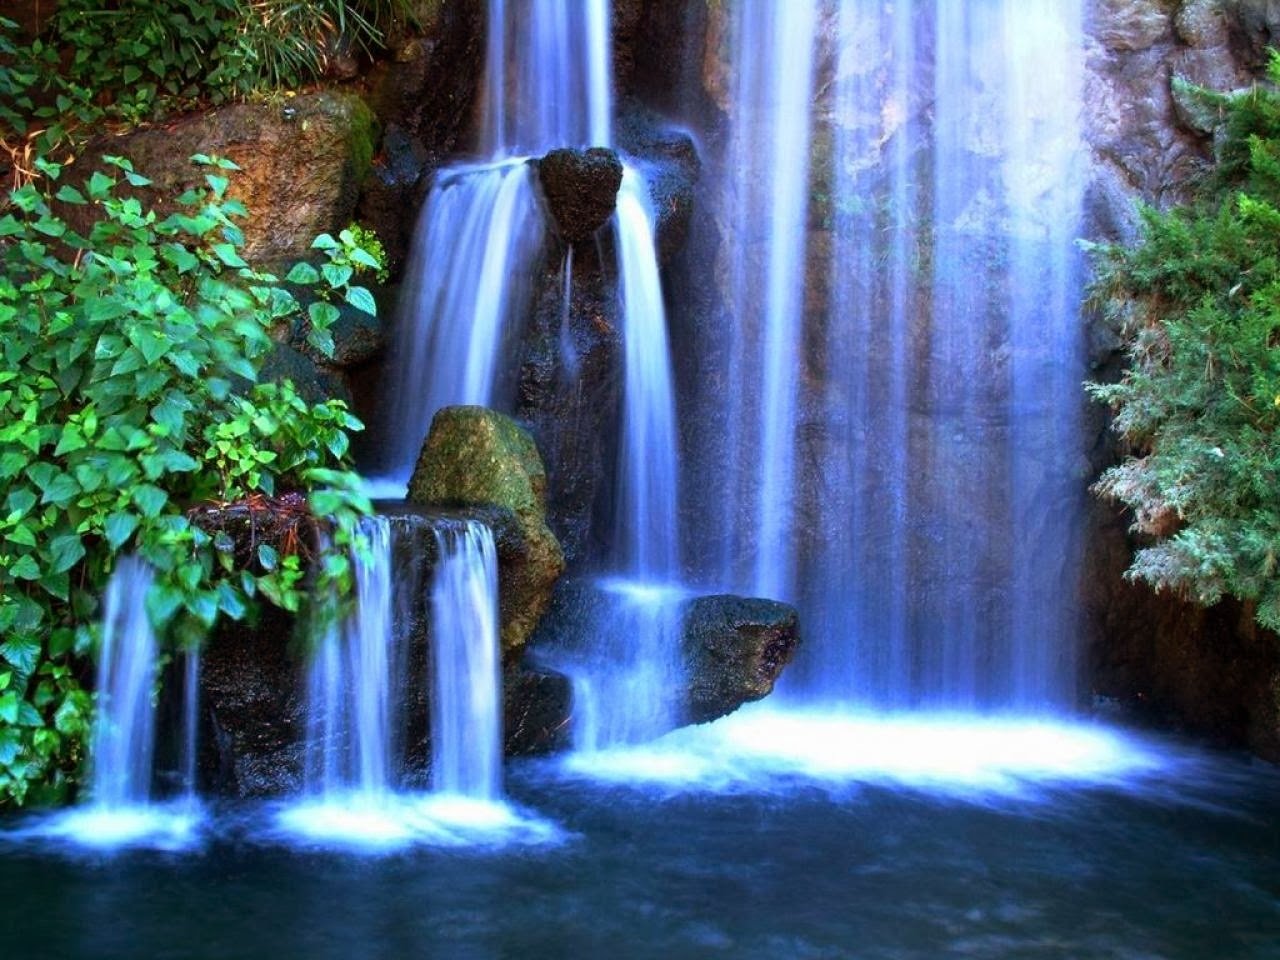 Обои на телефон живой водопад. Изображение водопада. Волшебный водопад. Красивые водопады. Живая природа водопады.